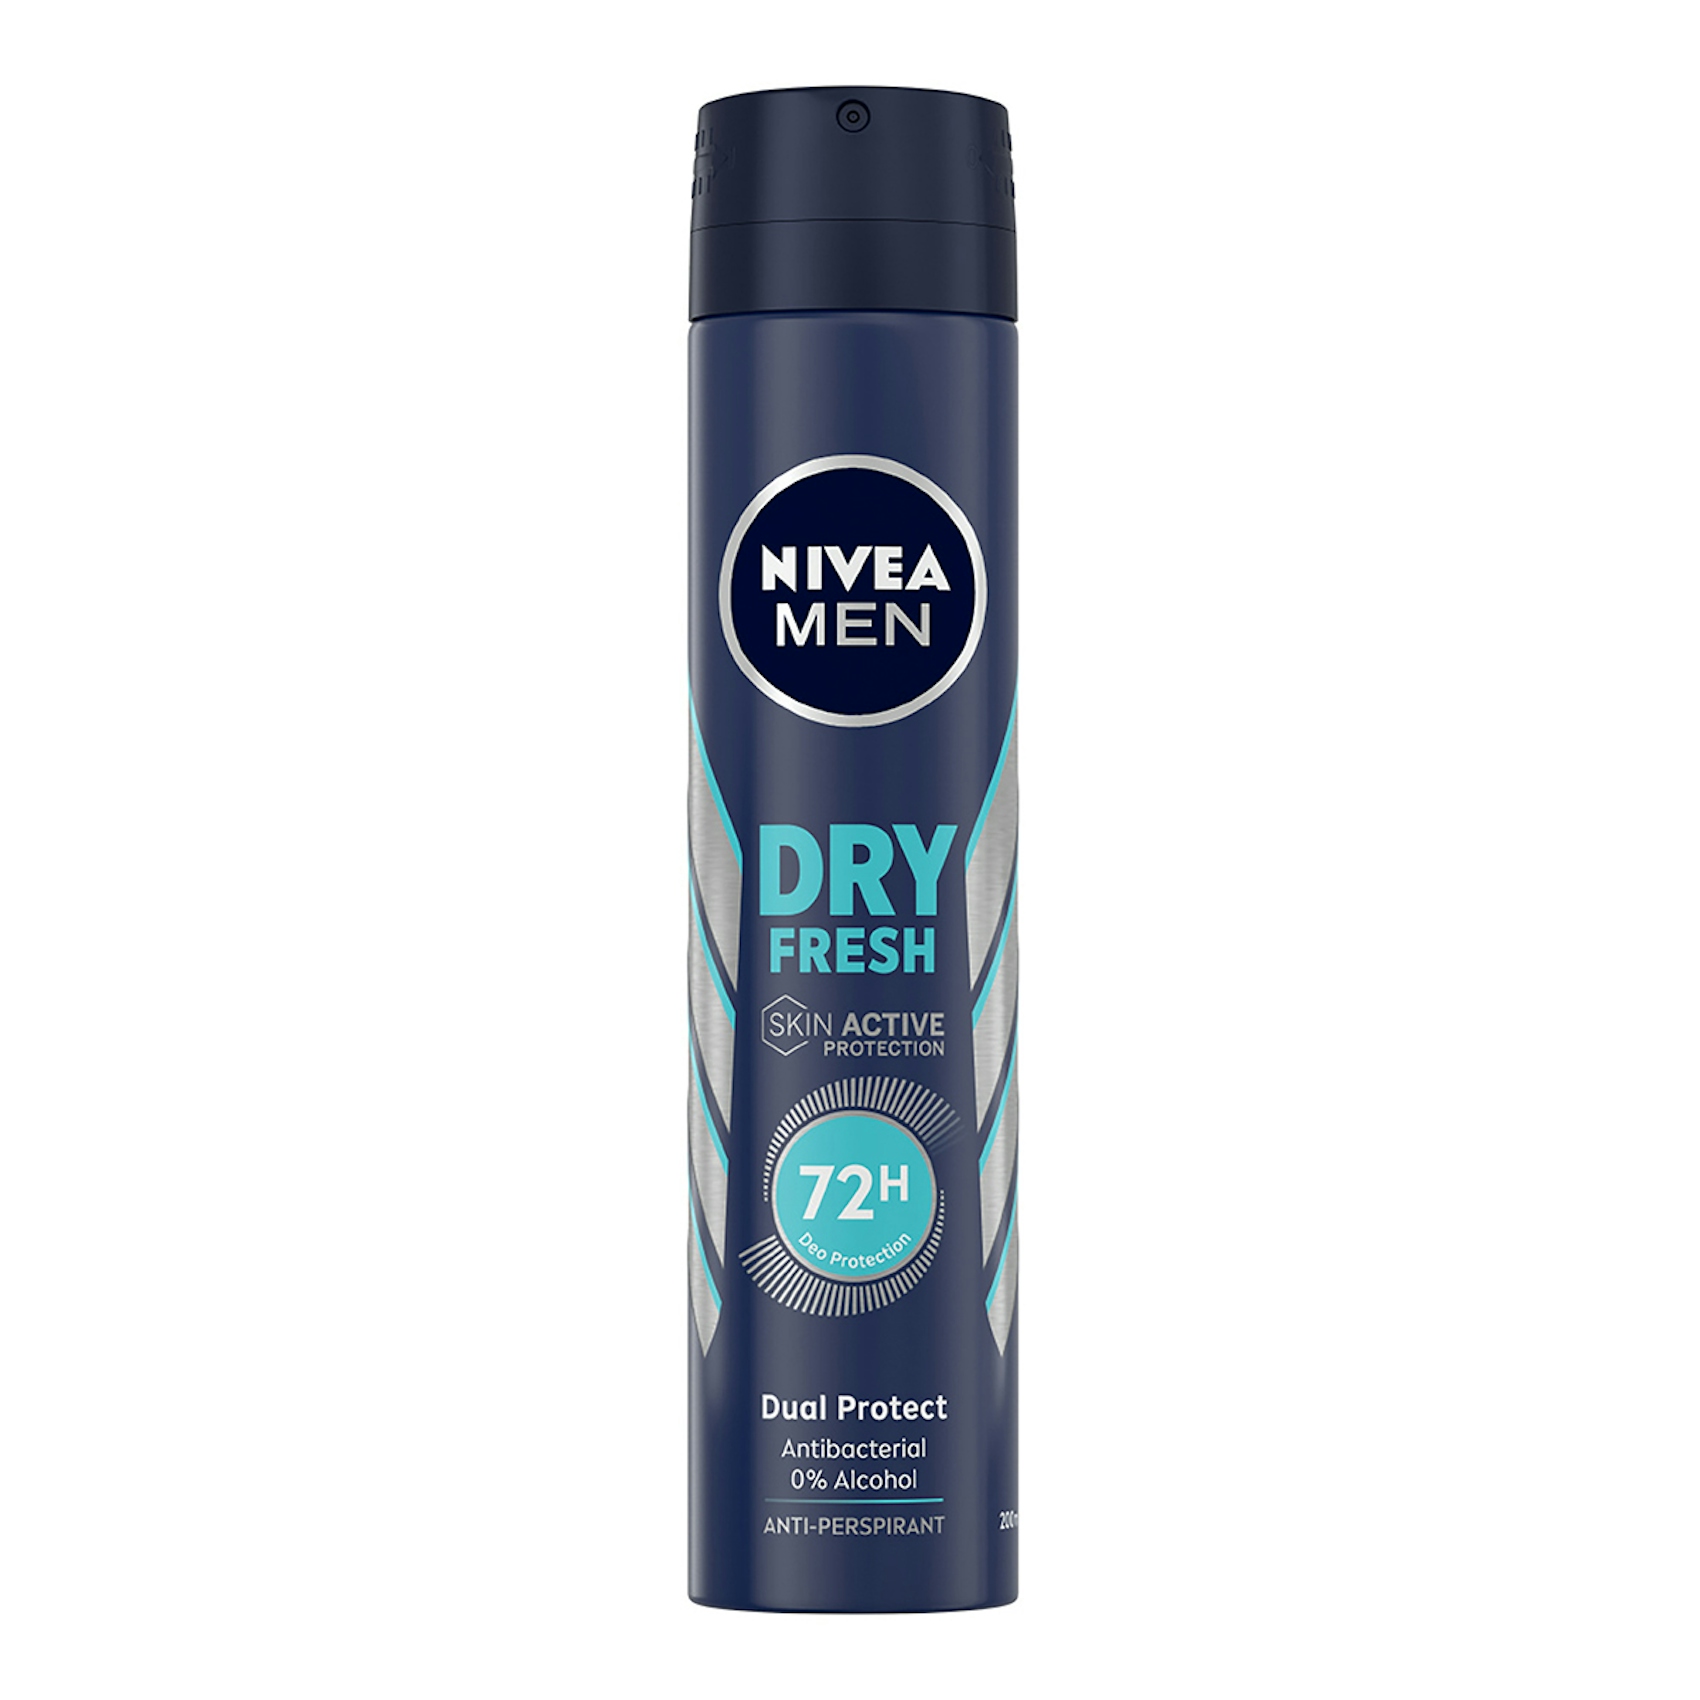 Desodorante dry fresh NIVEA Men spray 200 ml